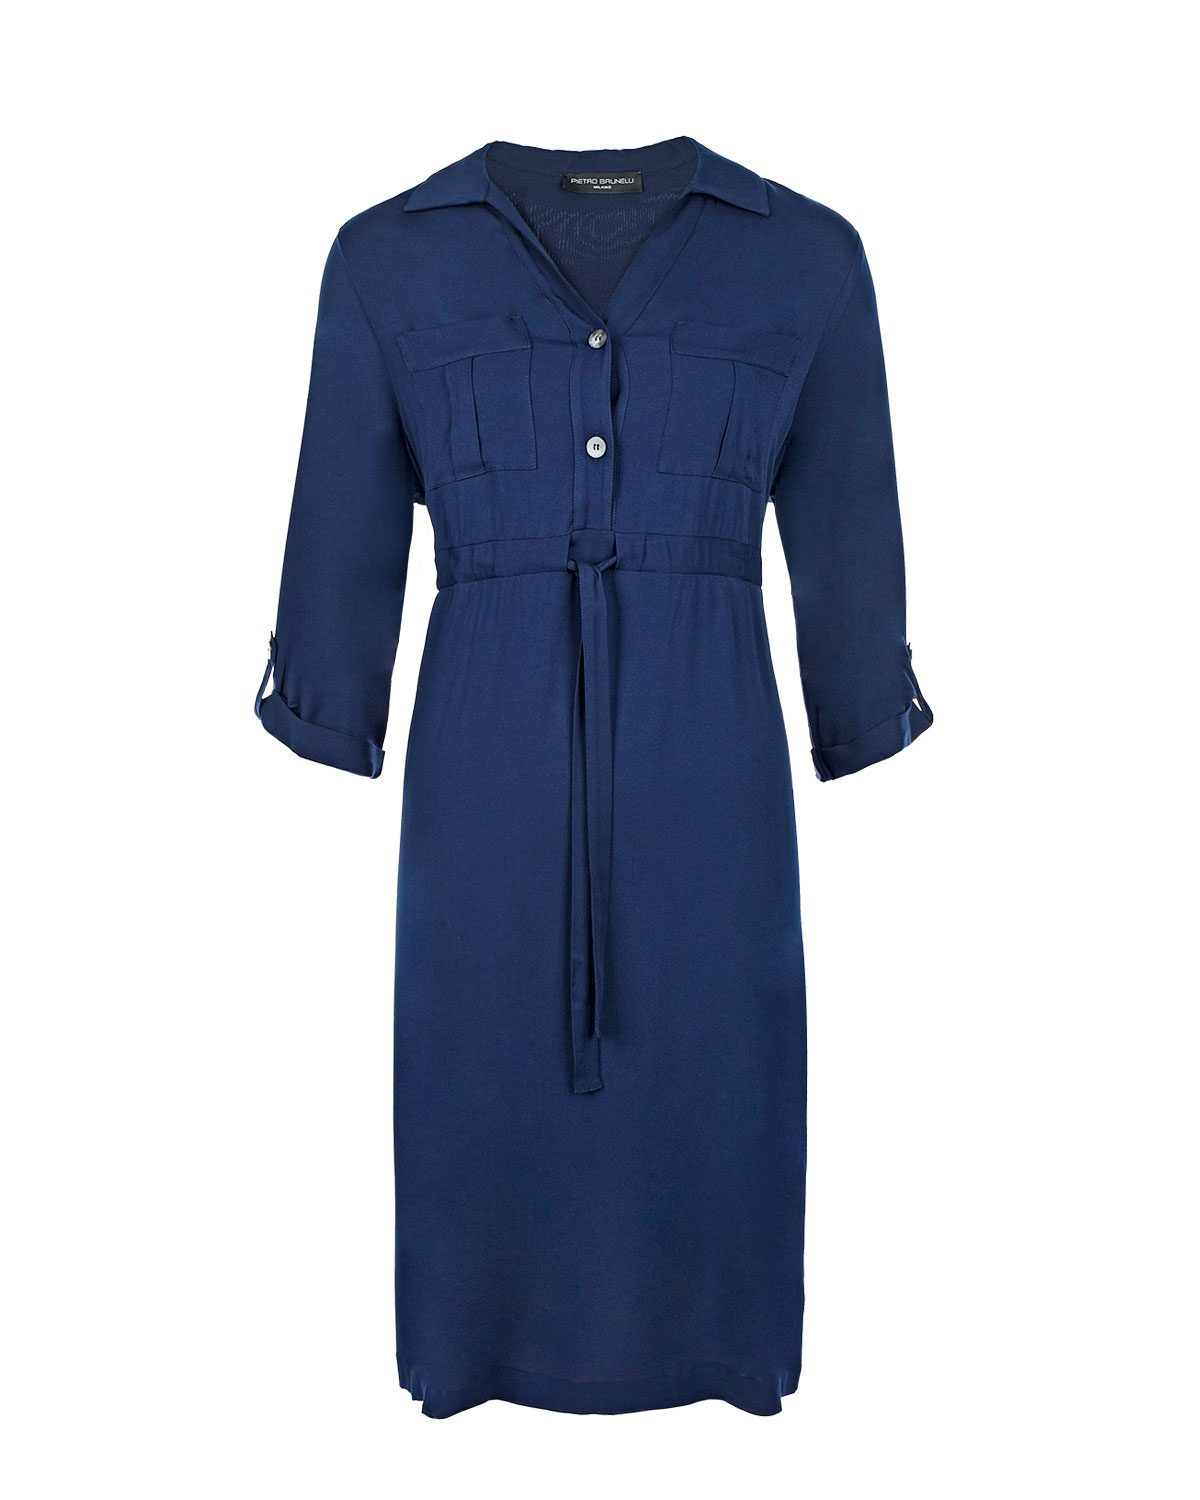 Синее платье с накладными карманами Pietro Brunelli, размер 42, цвет синий